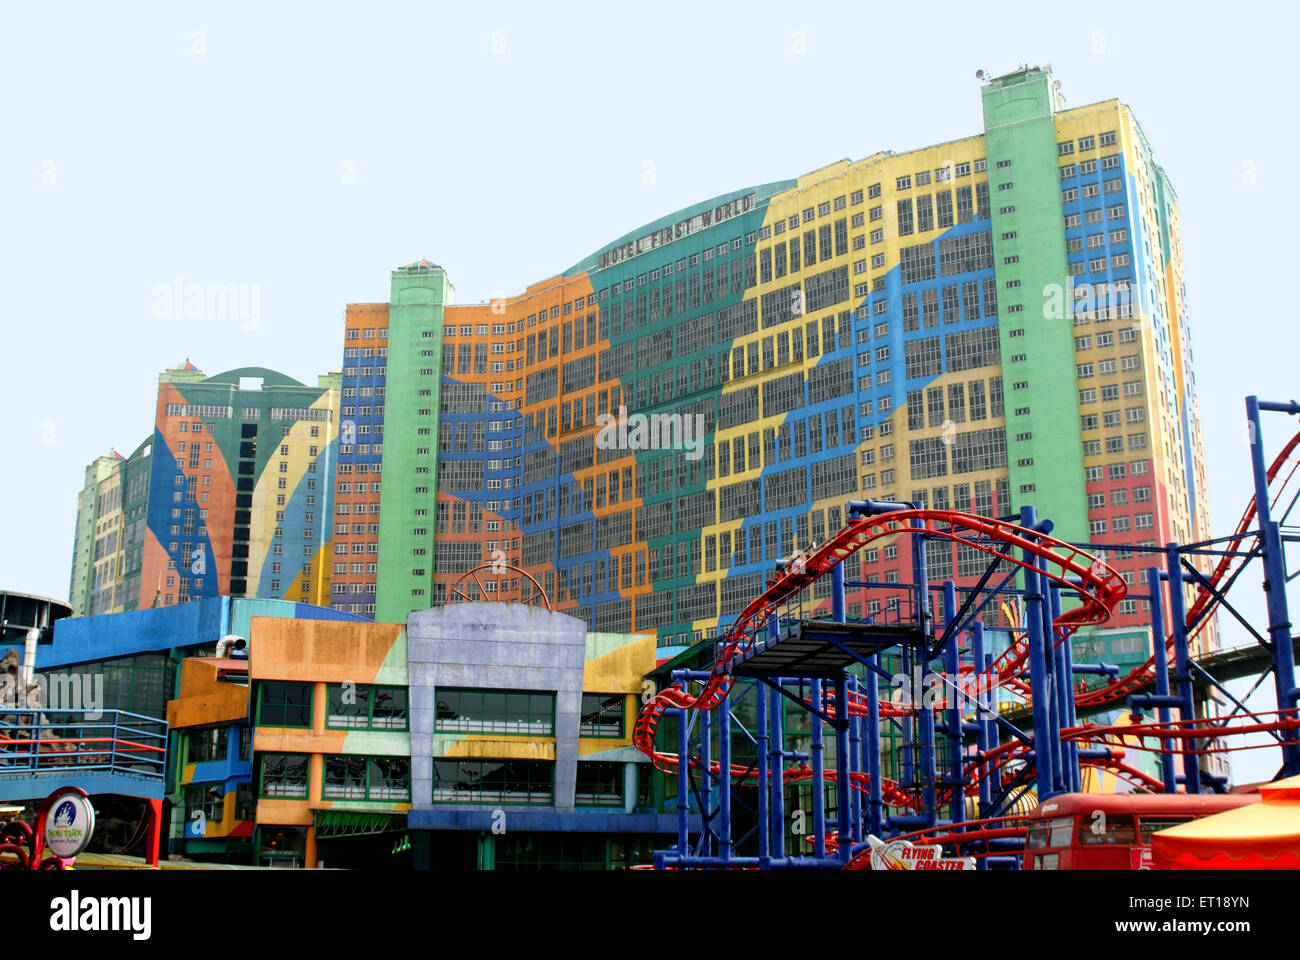 Highland genting theme park, près de Kuala Lumpur Malaisie - smr 167061 Banque D'Images